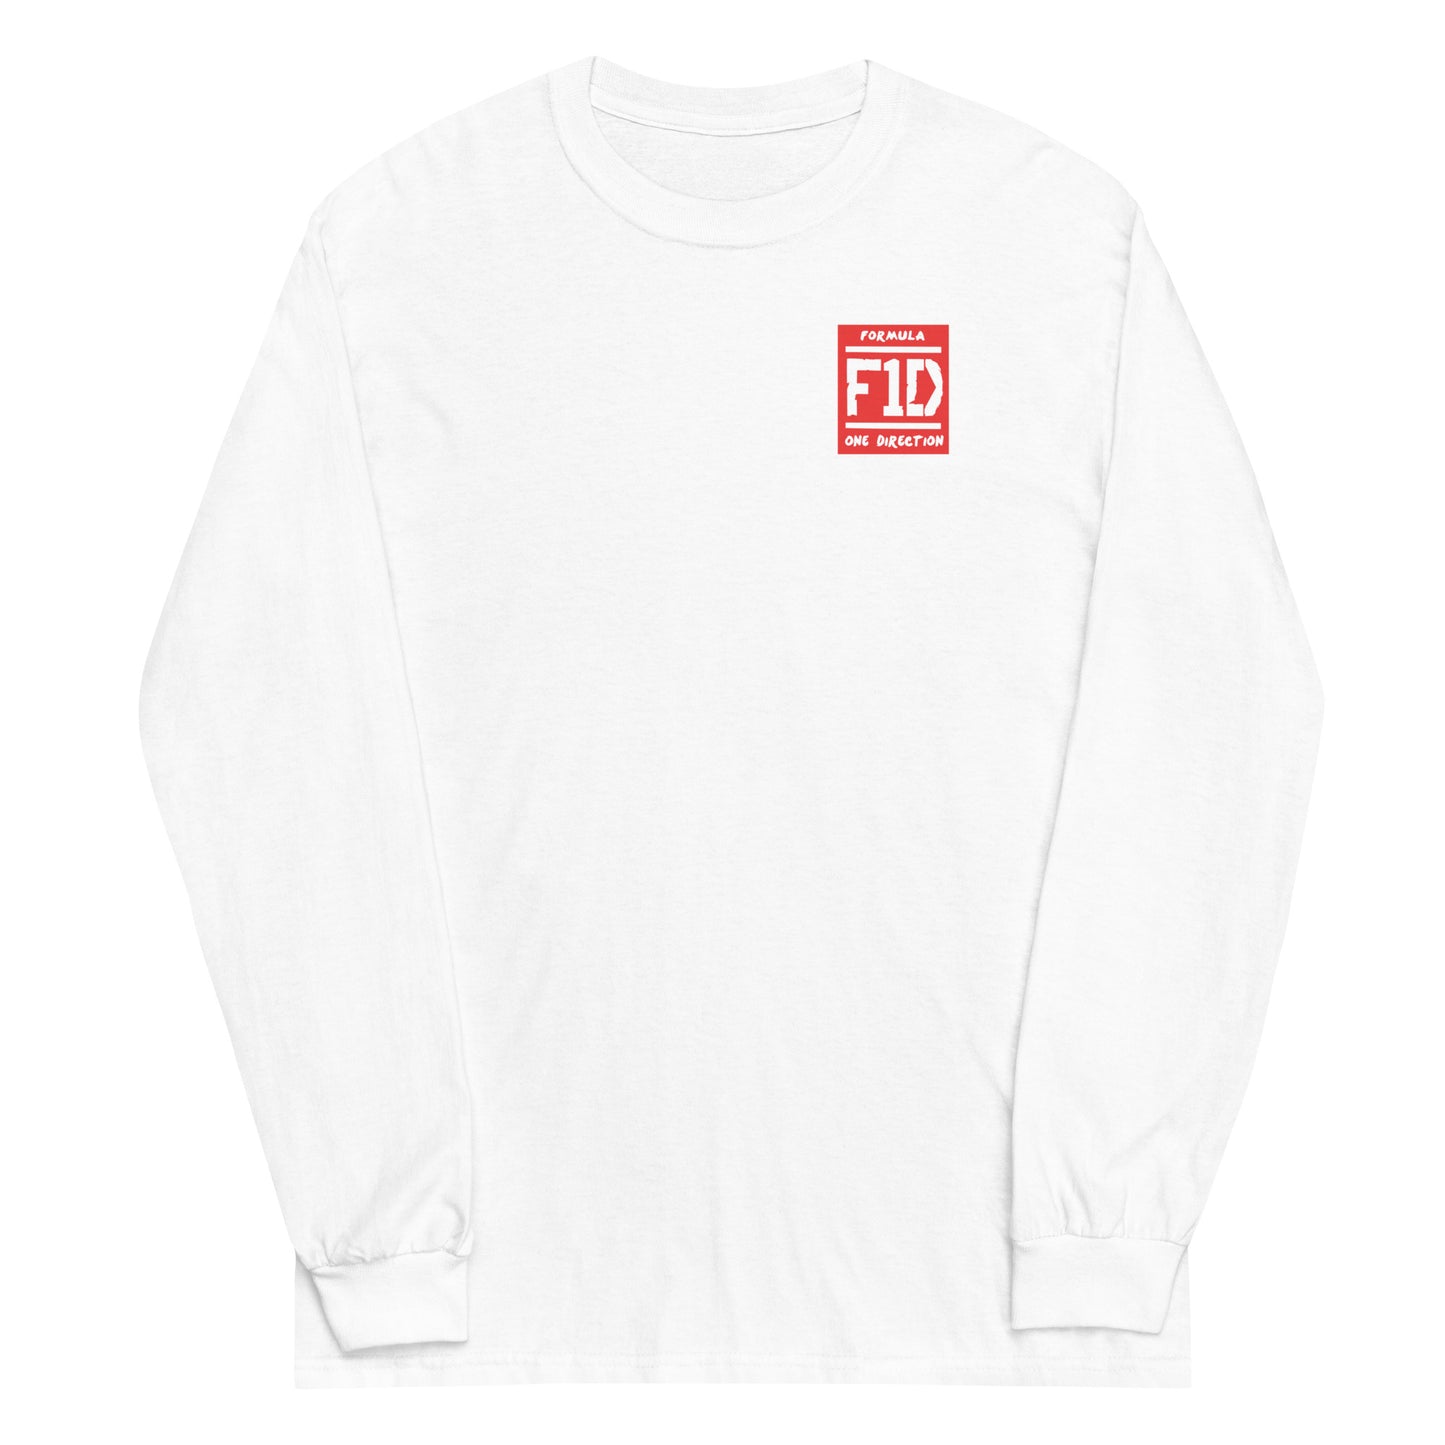 F1D Long Sleeve Shirt